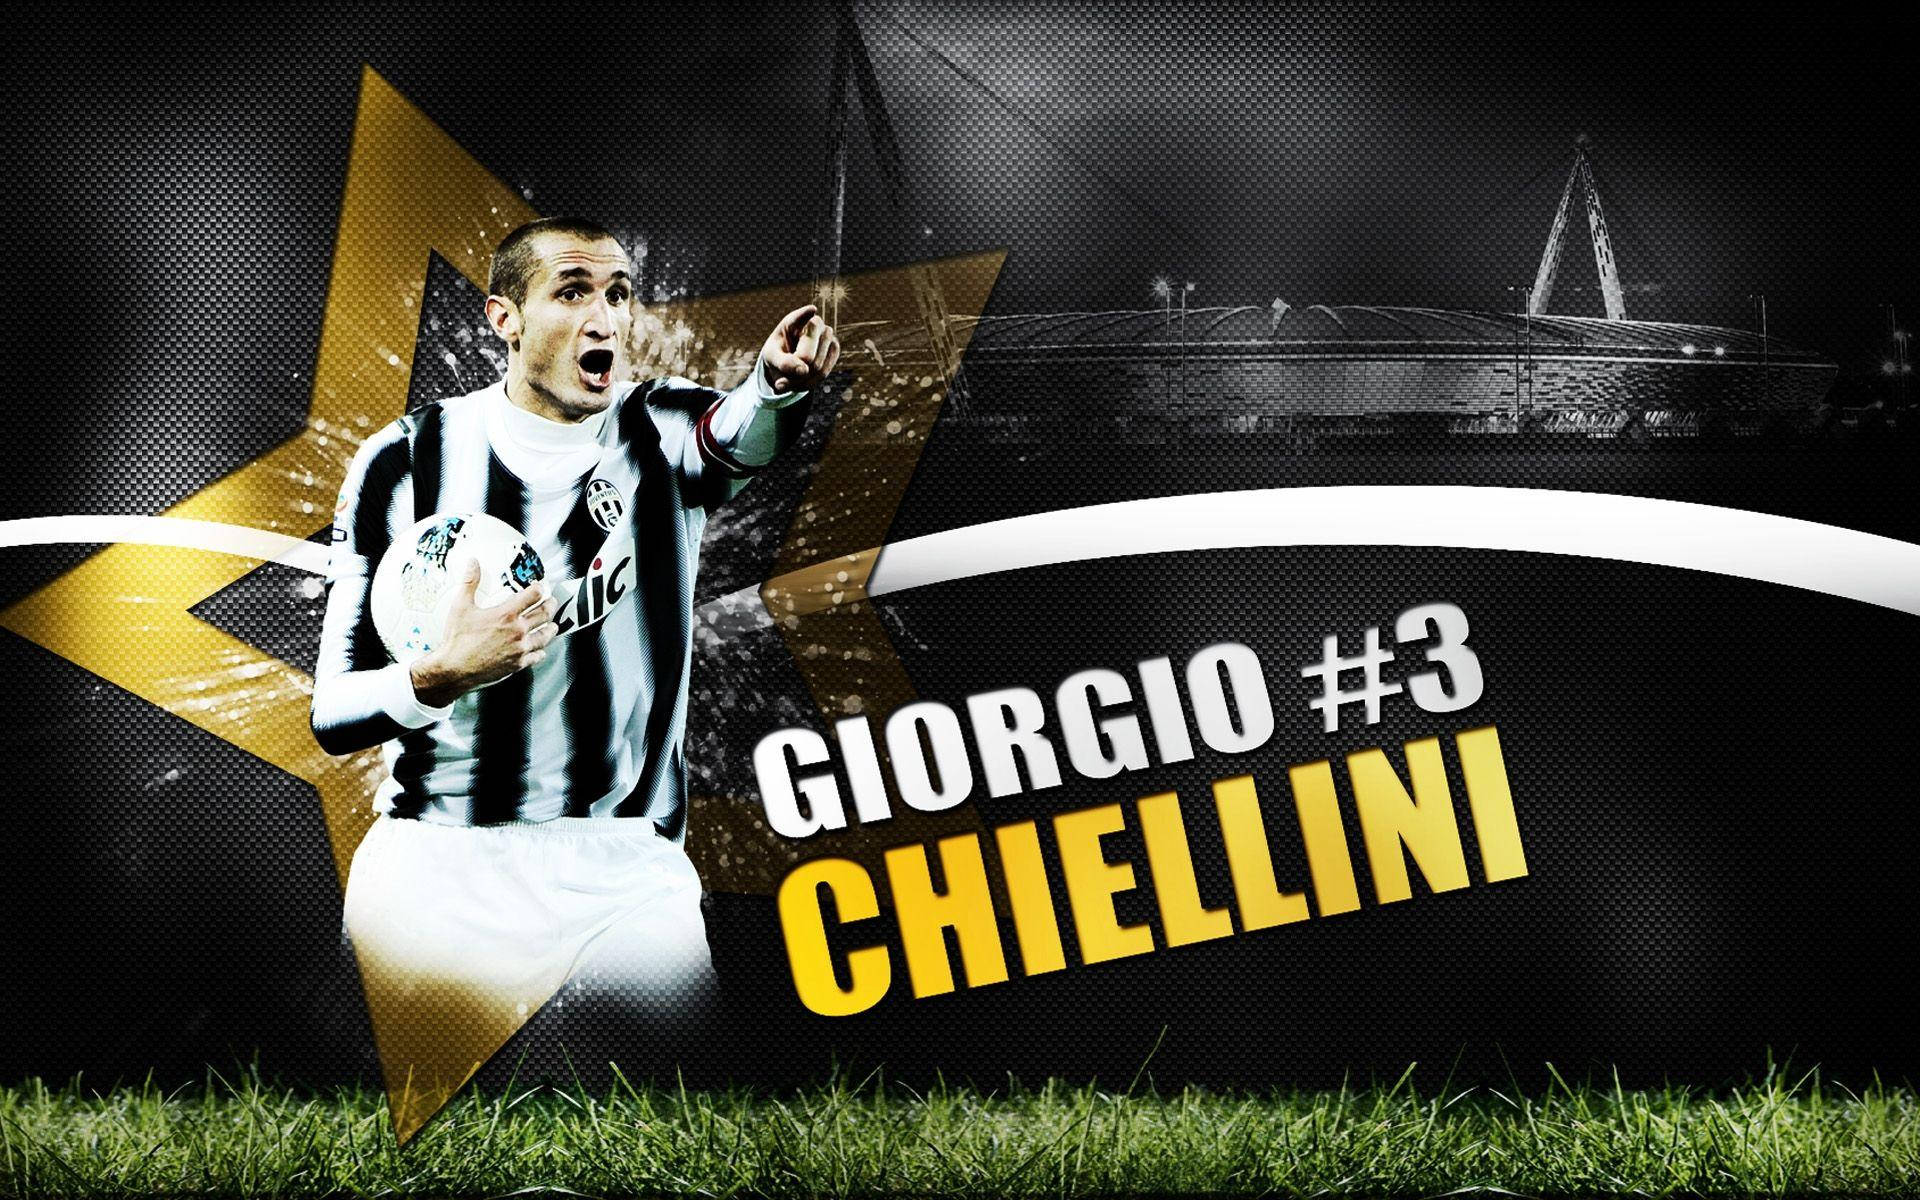 Giorgiochiellini Giocatore Di Calcio Poster Digitale Art Sfondo